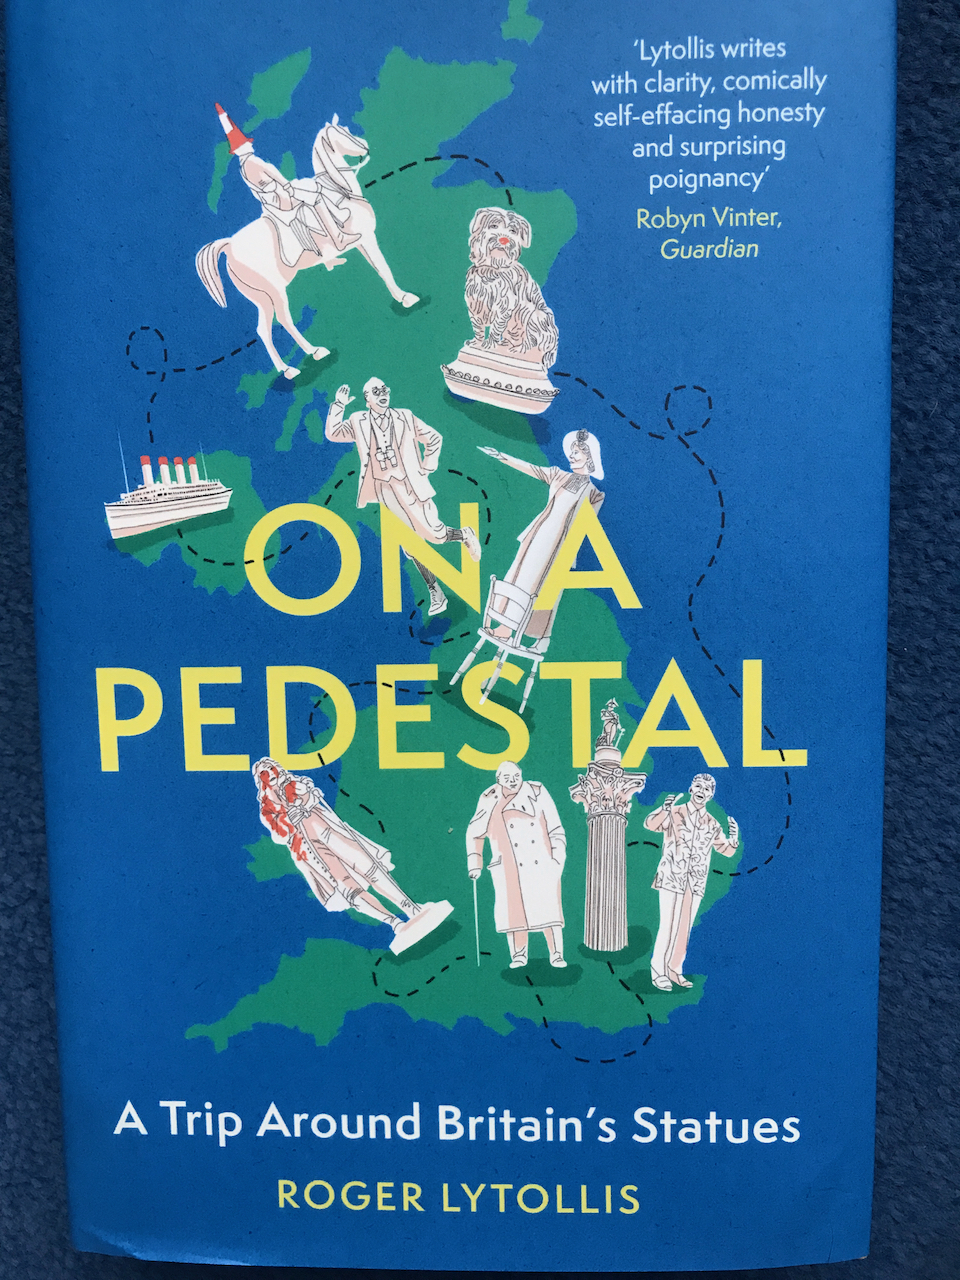 NEW BOOK – On a Pedestal